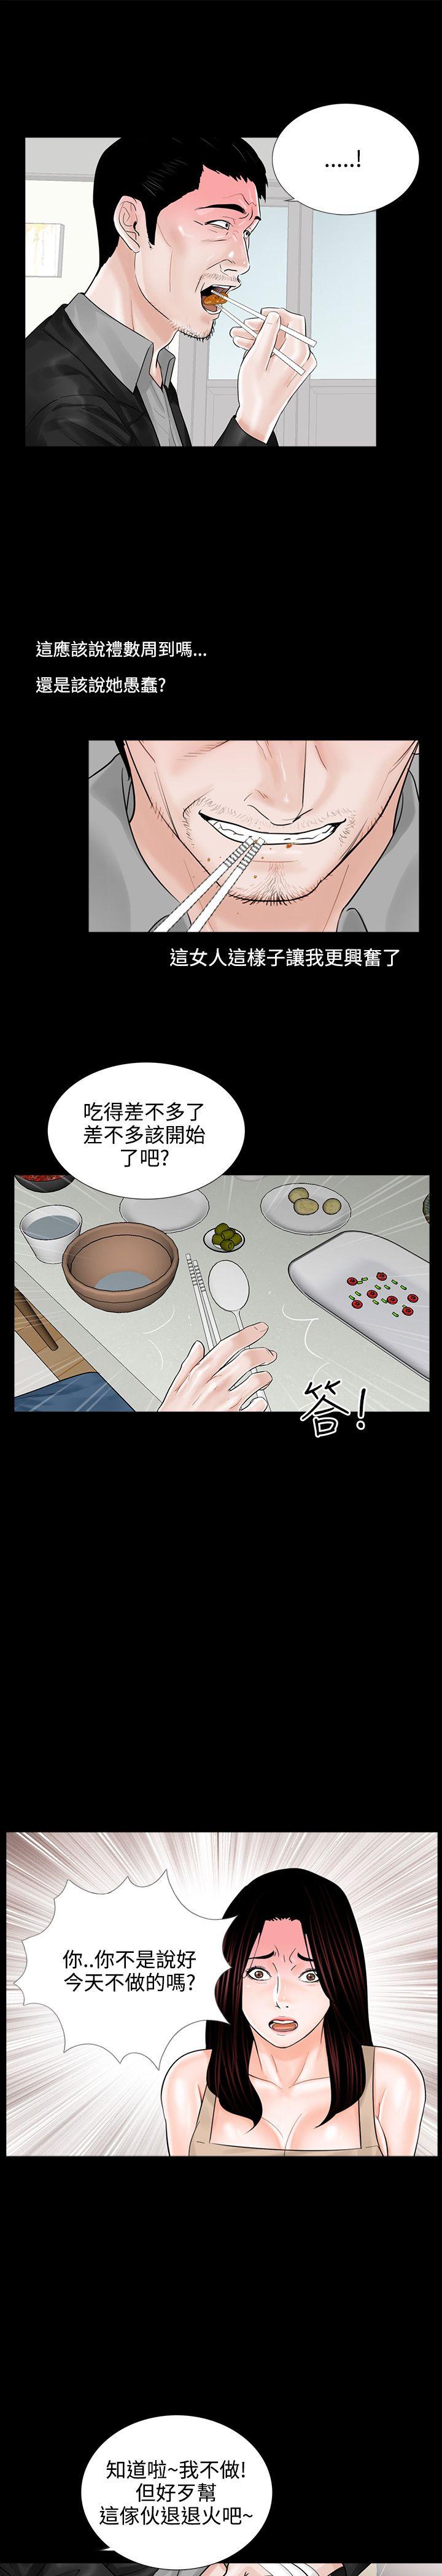 韩国污漫画 夢魘 第8话 21